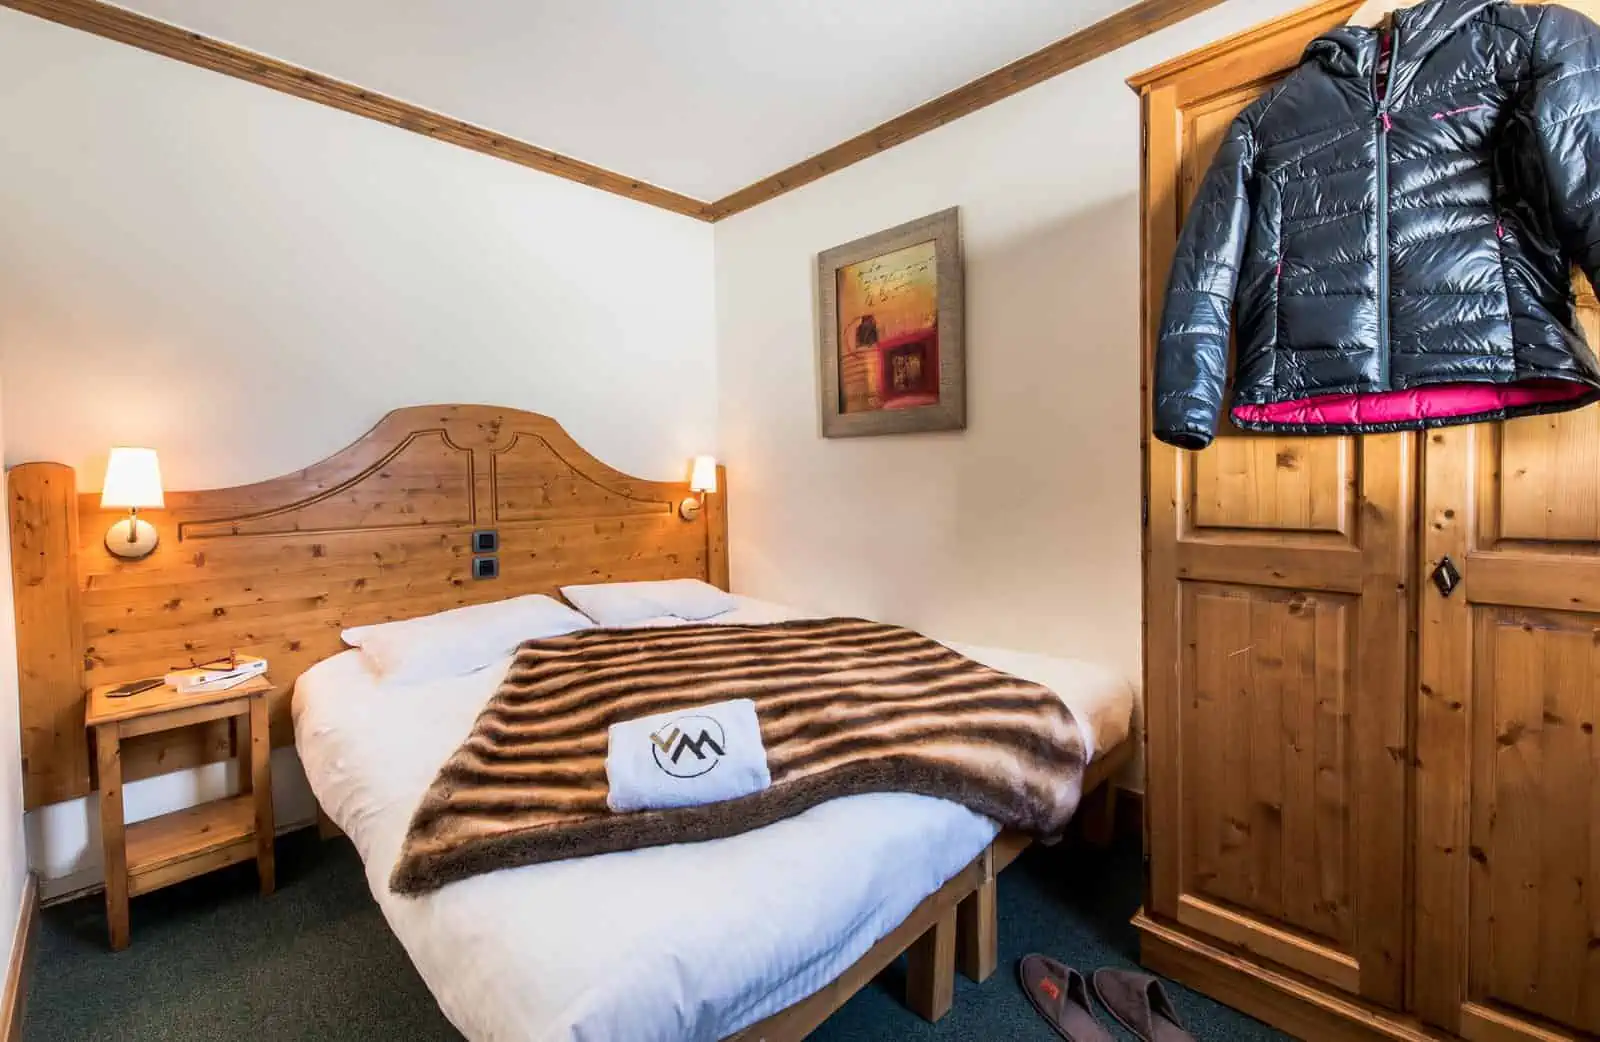 résidence montana tignes - 2 chambres et canape lit